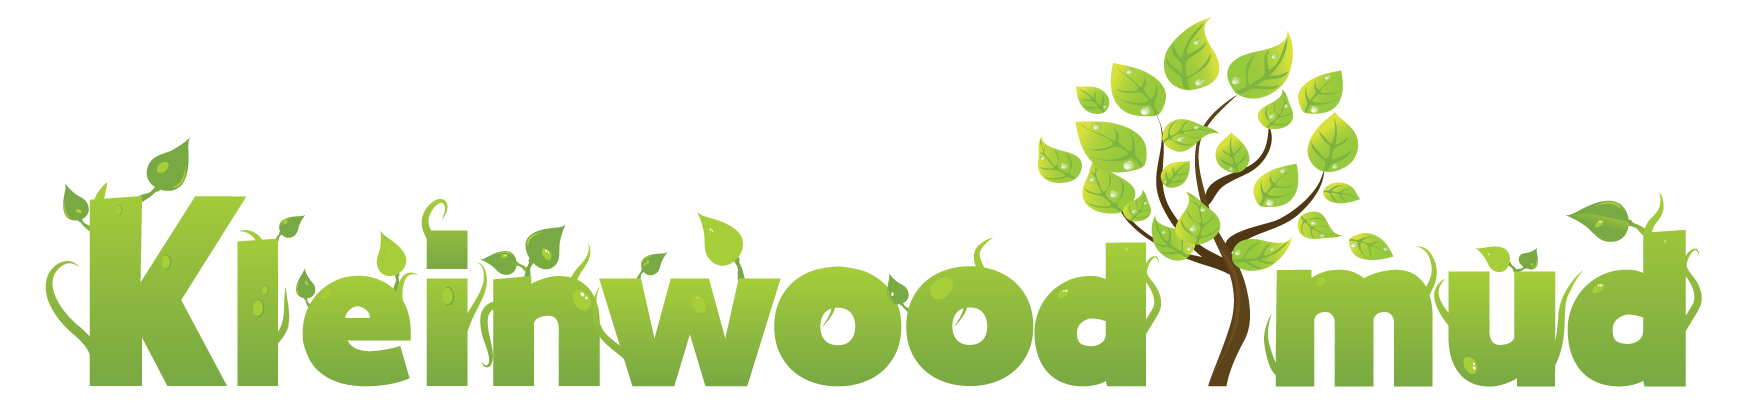 Kleinwood MUD logo